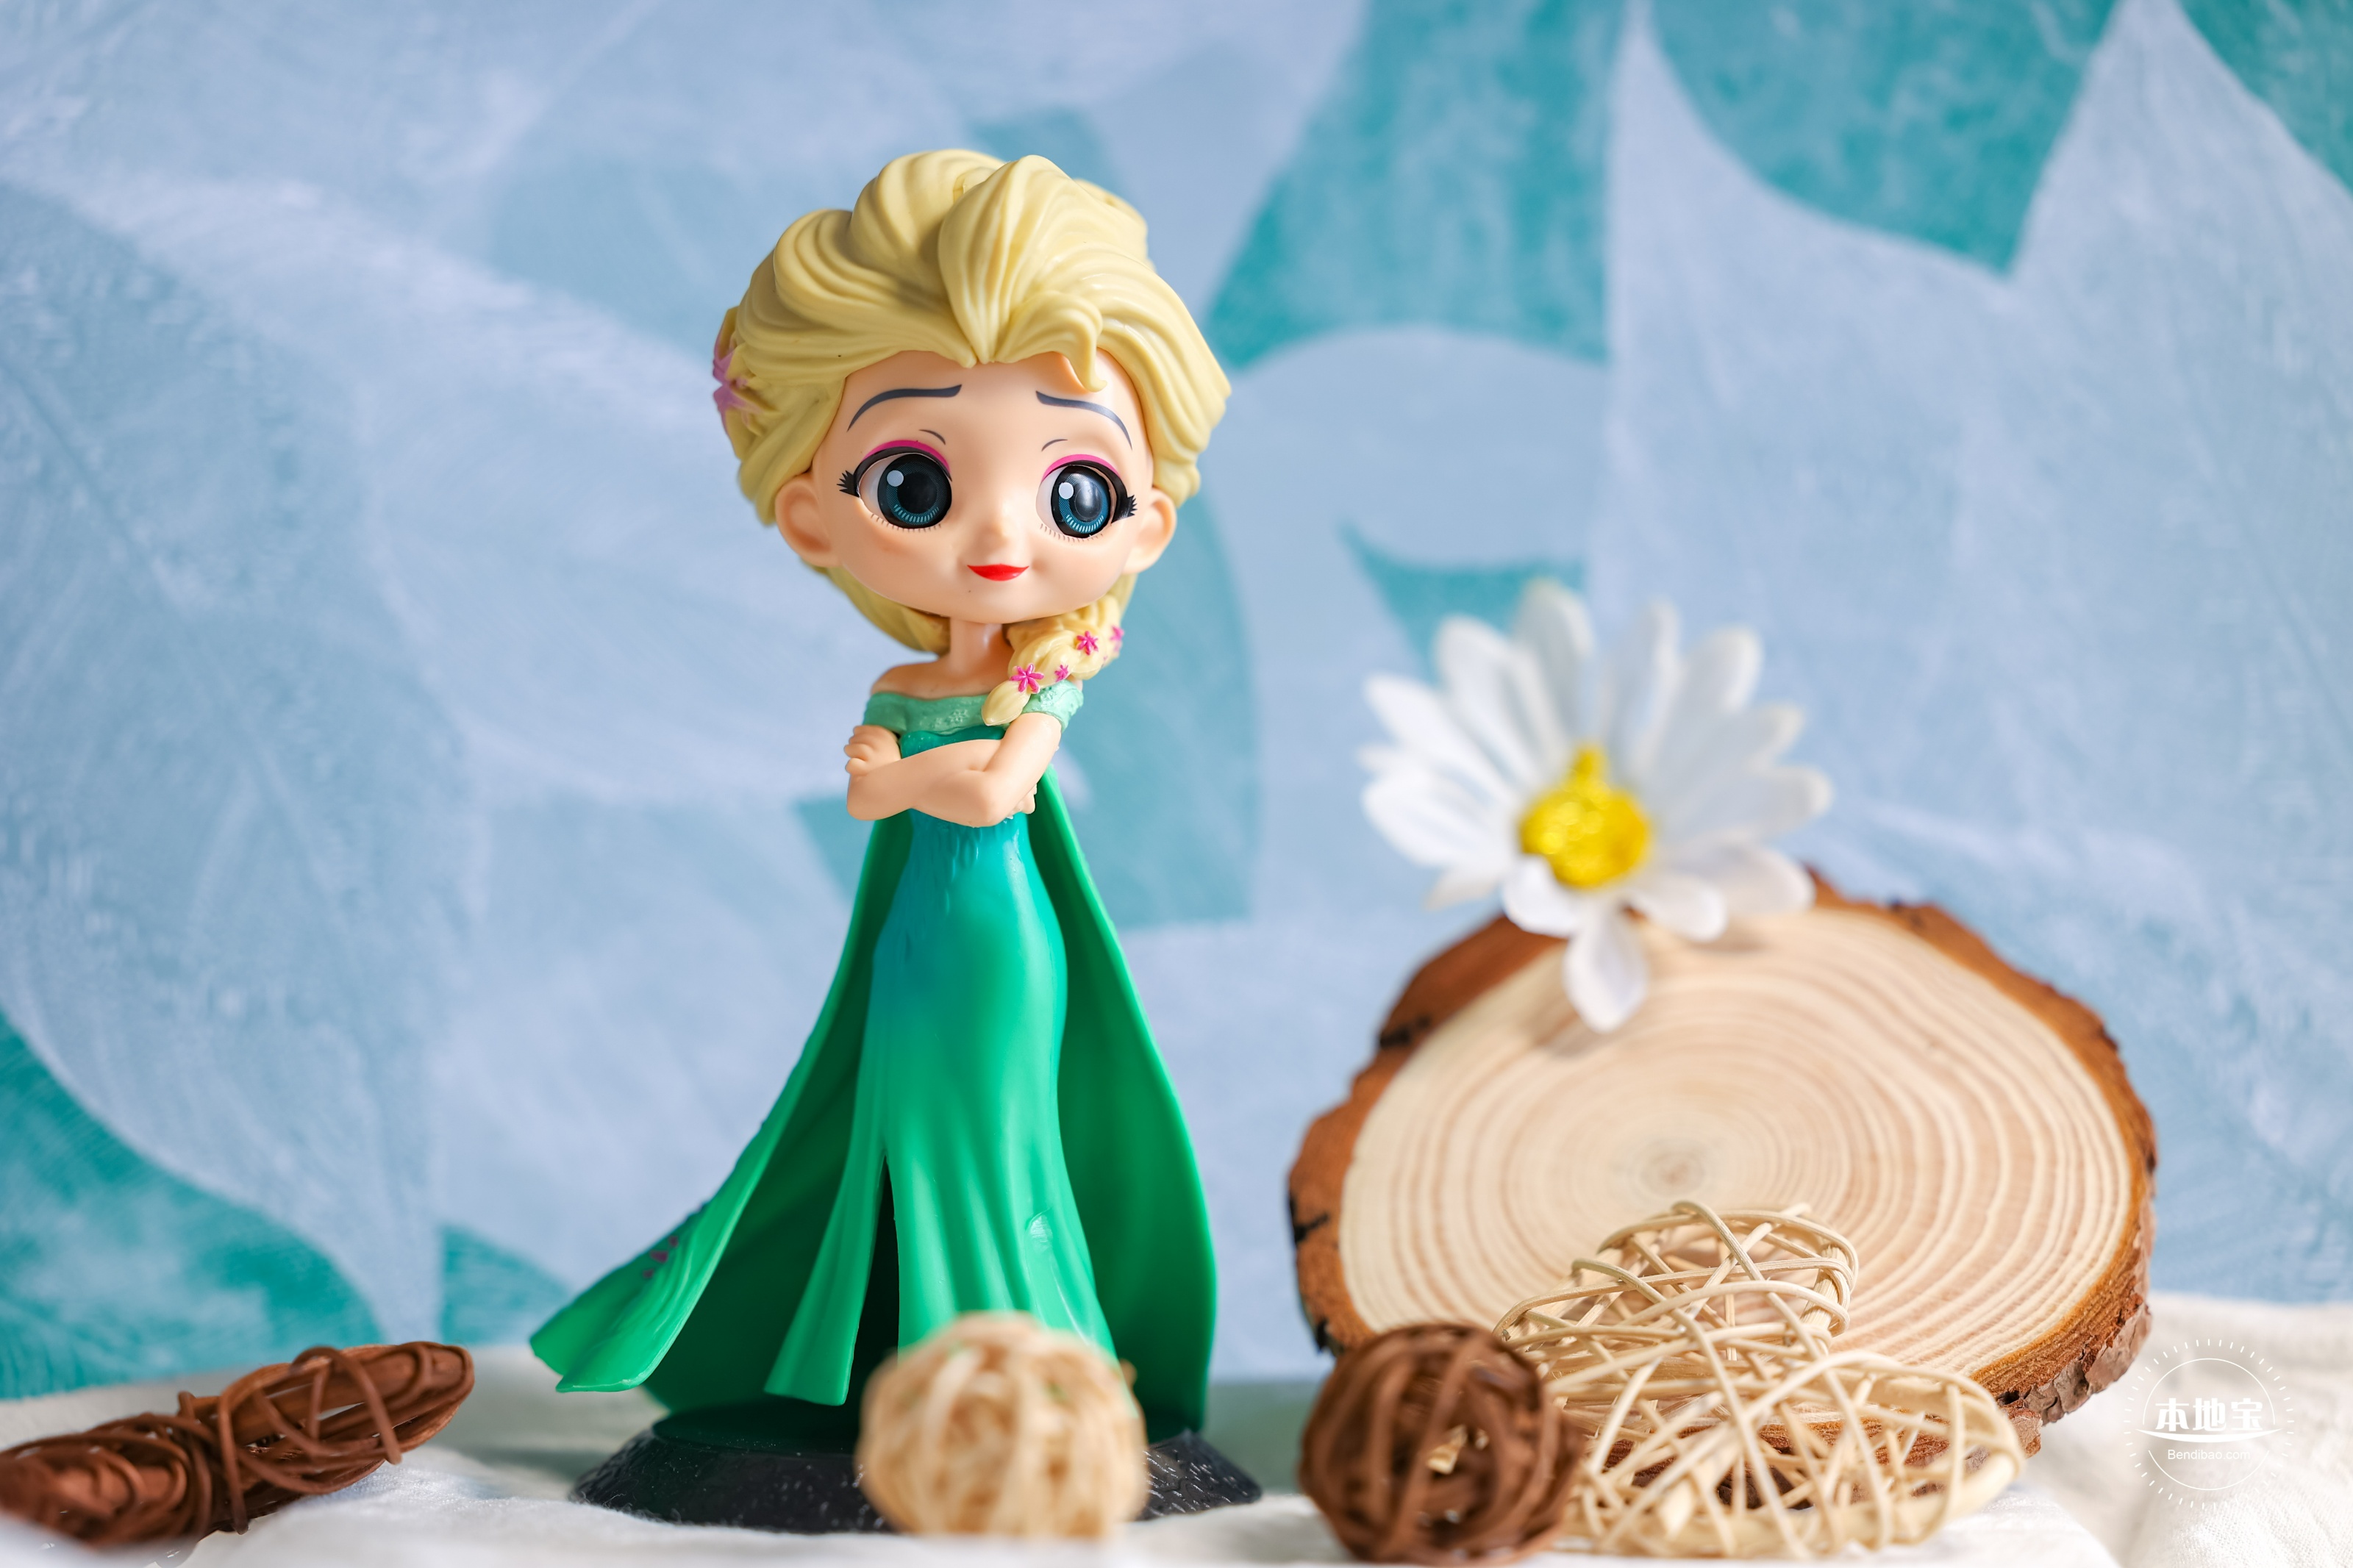 冰雪奇缘 迪士尼公主 艾莎Elsa - 堆糖，美图壁纸兴趣社区